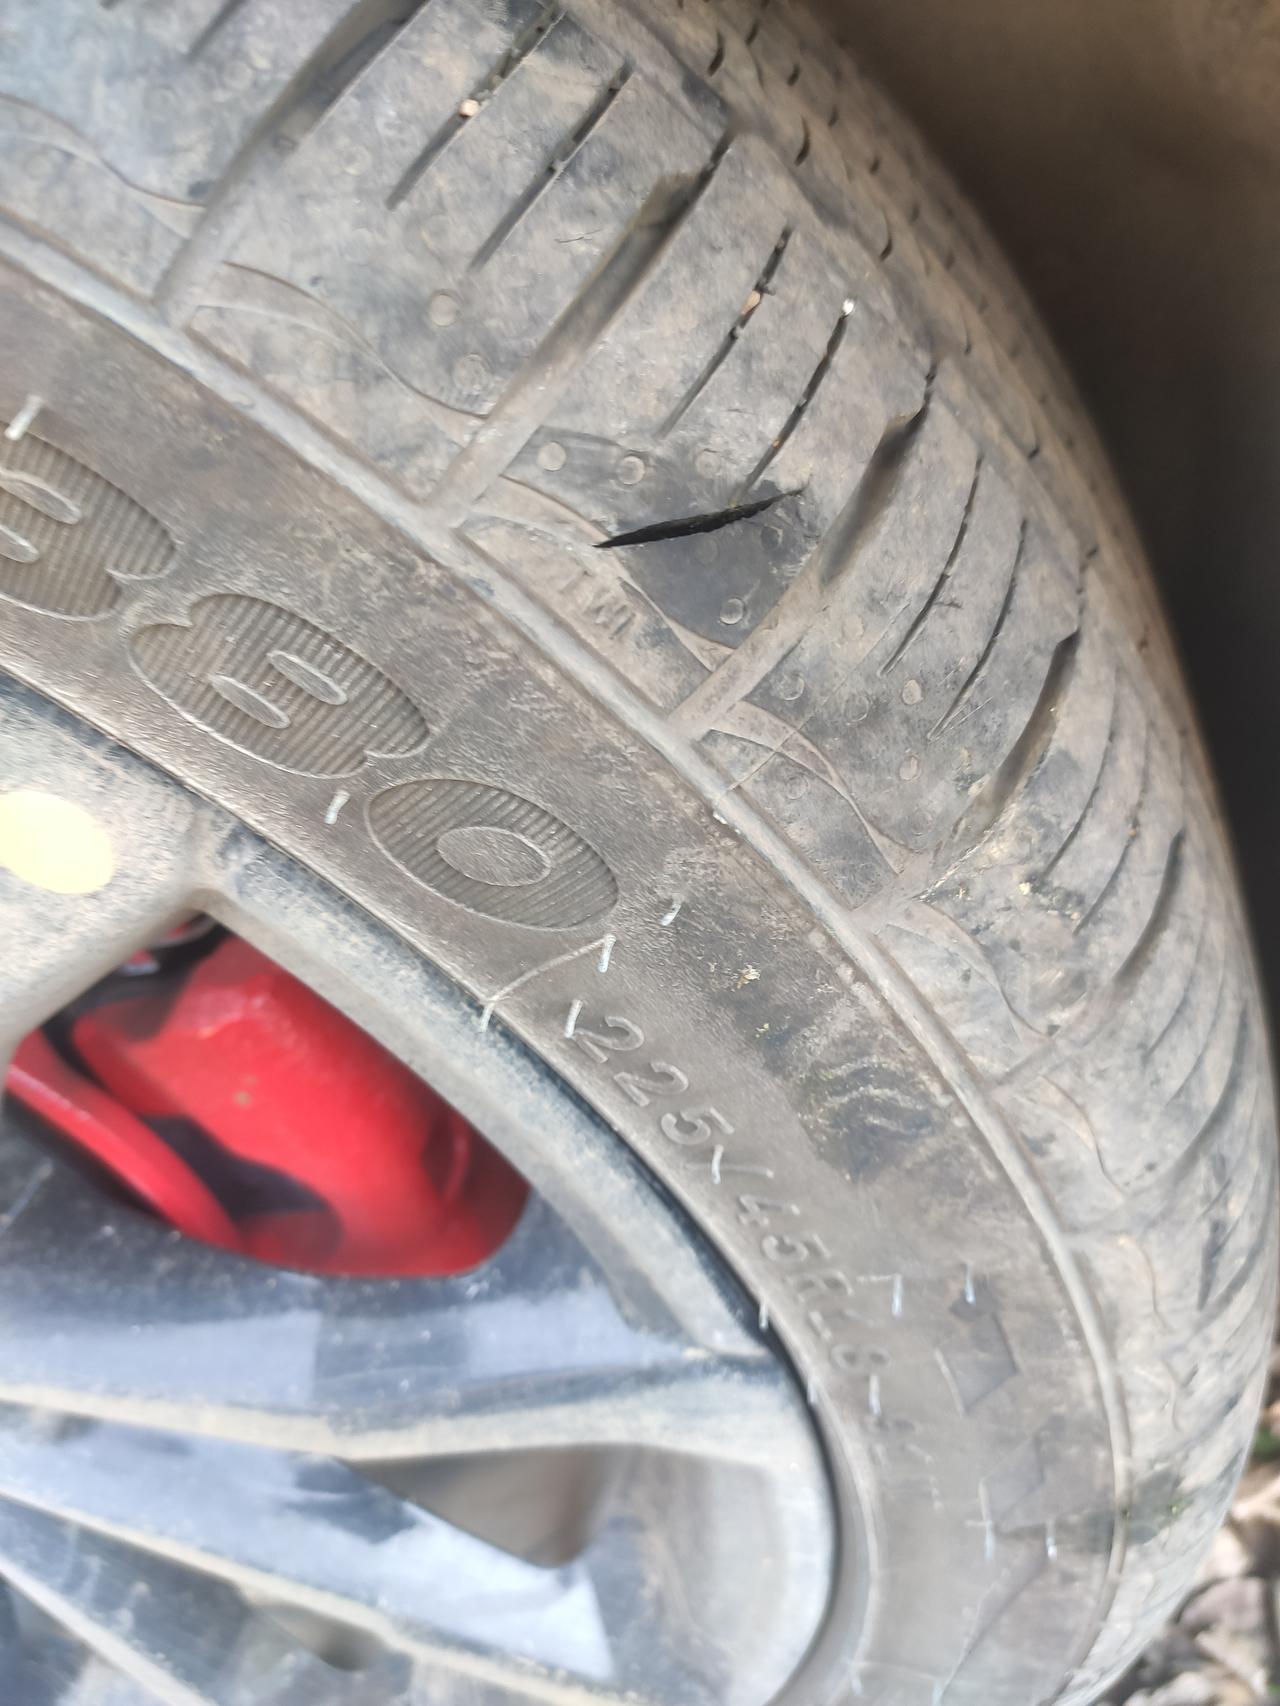 吉利帝豪S 各位大佬，今天看到轮胎破了个口，不知道是被啥扎的，深度超过一厘米，但是没漏气。使用还没到2000公里，换胎的